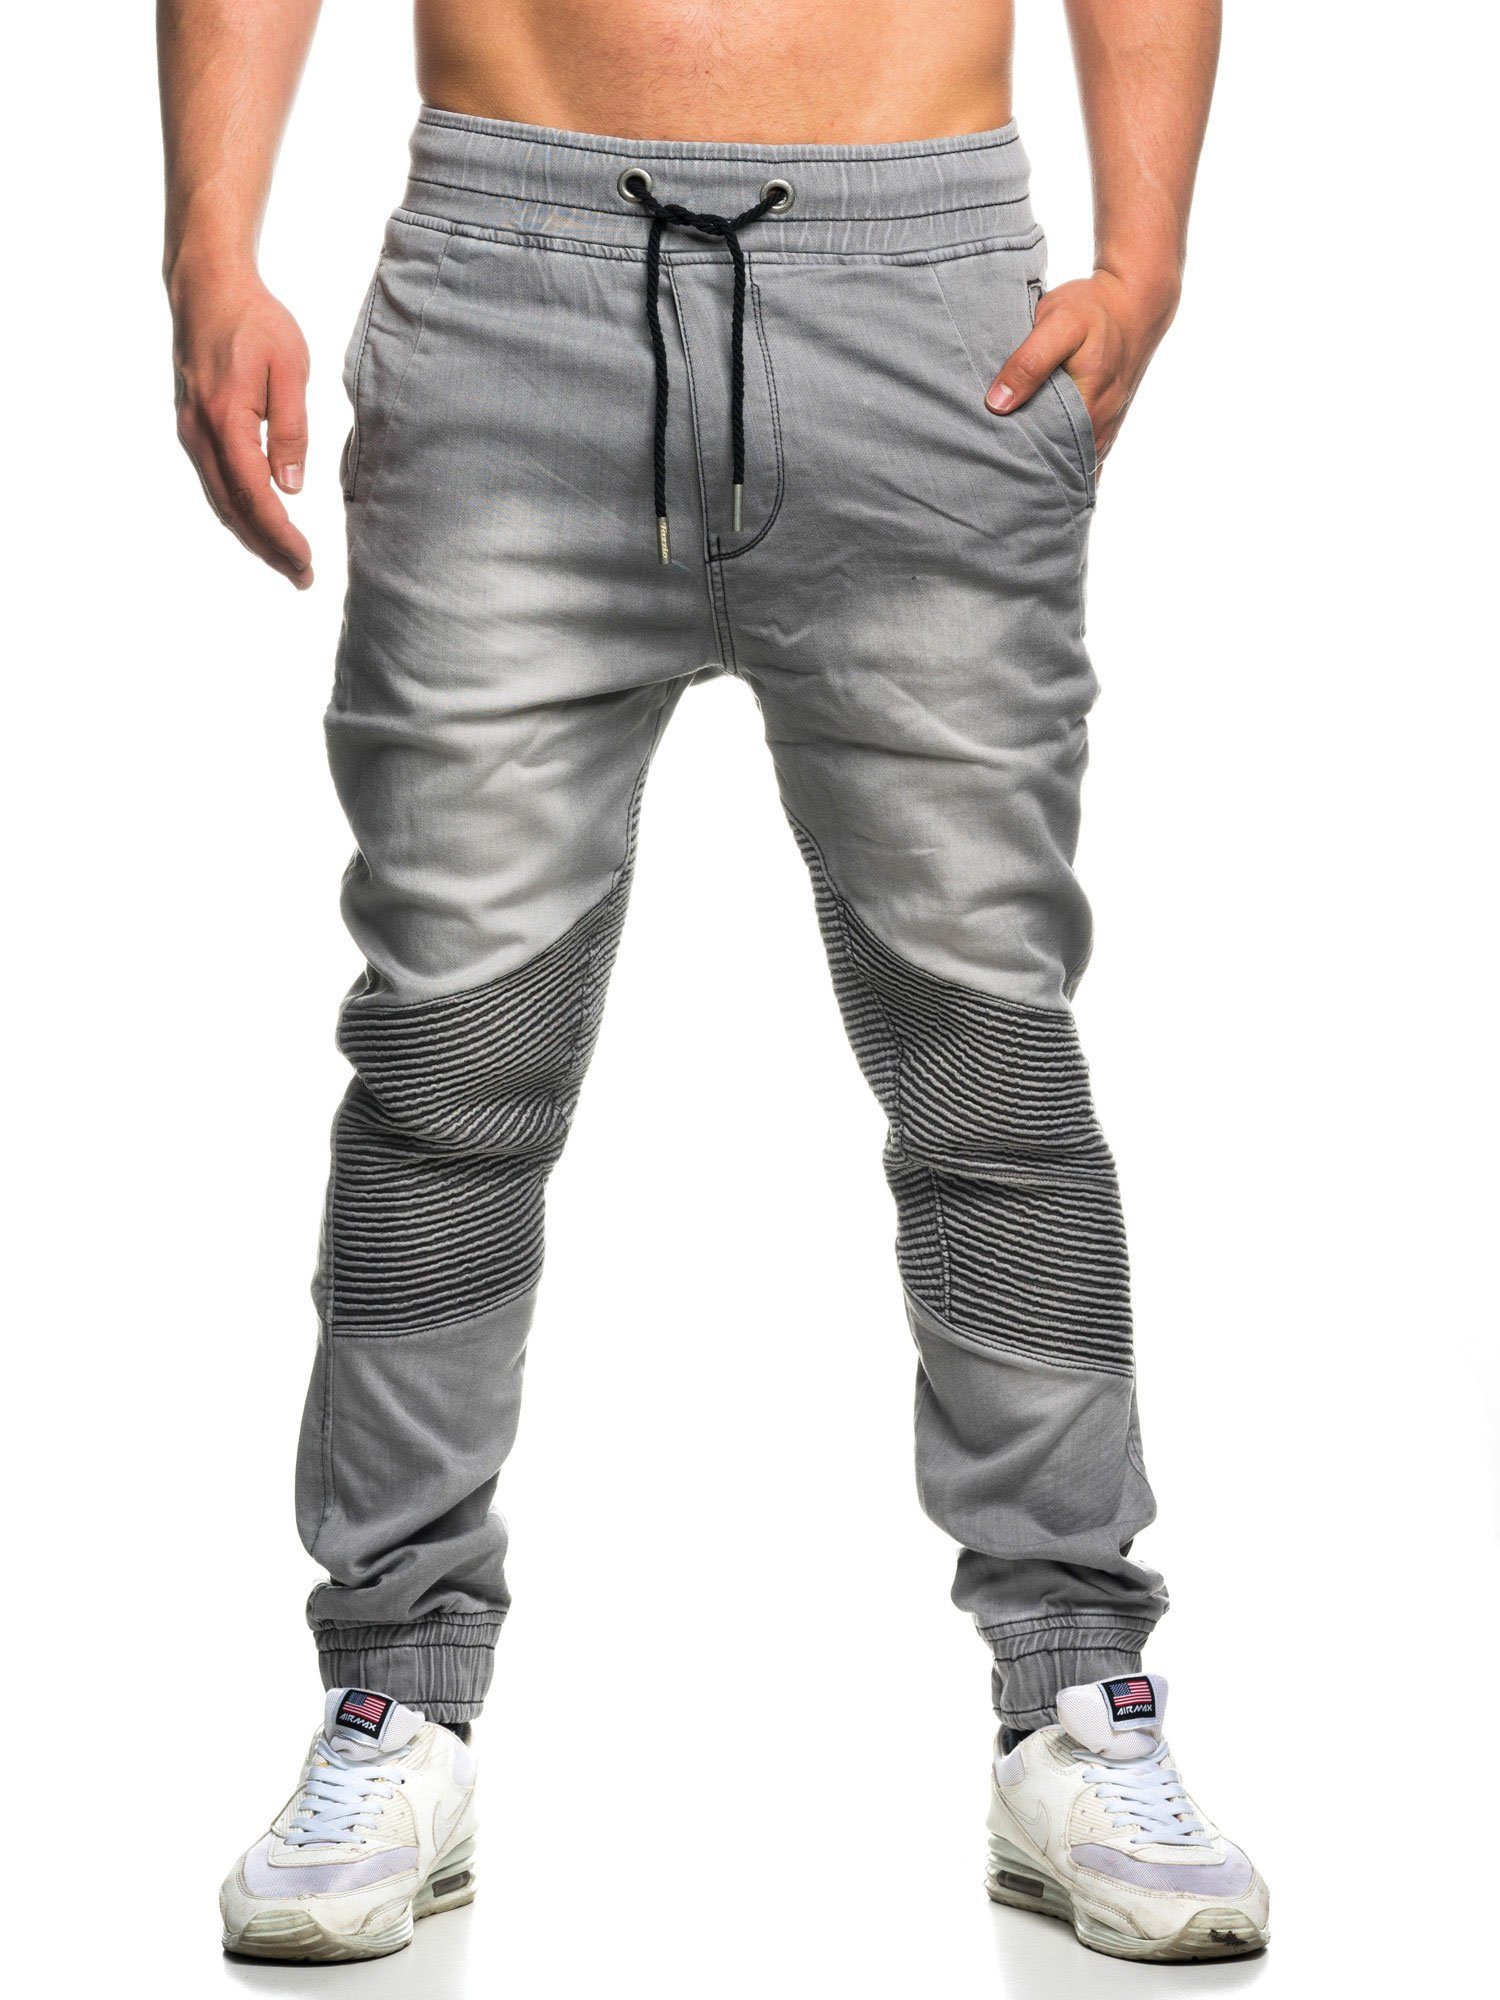 grau 16505 Jogger-Stil & Biker-Look Straight-Jeans Hose Tazzio im Sweat